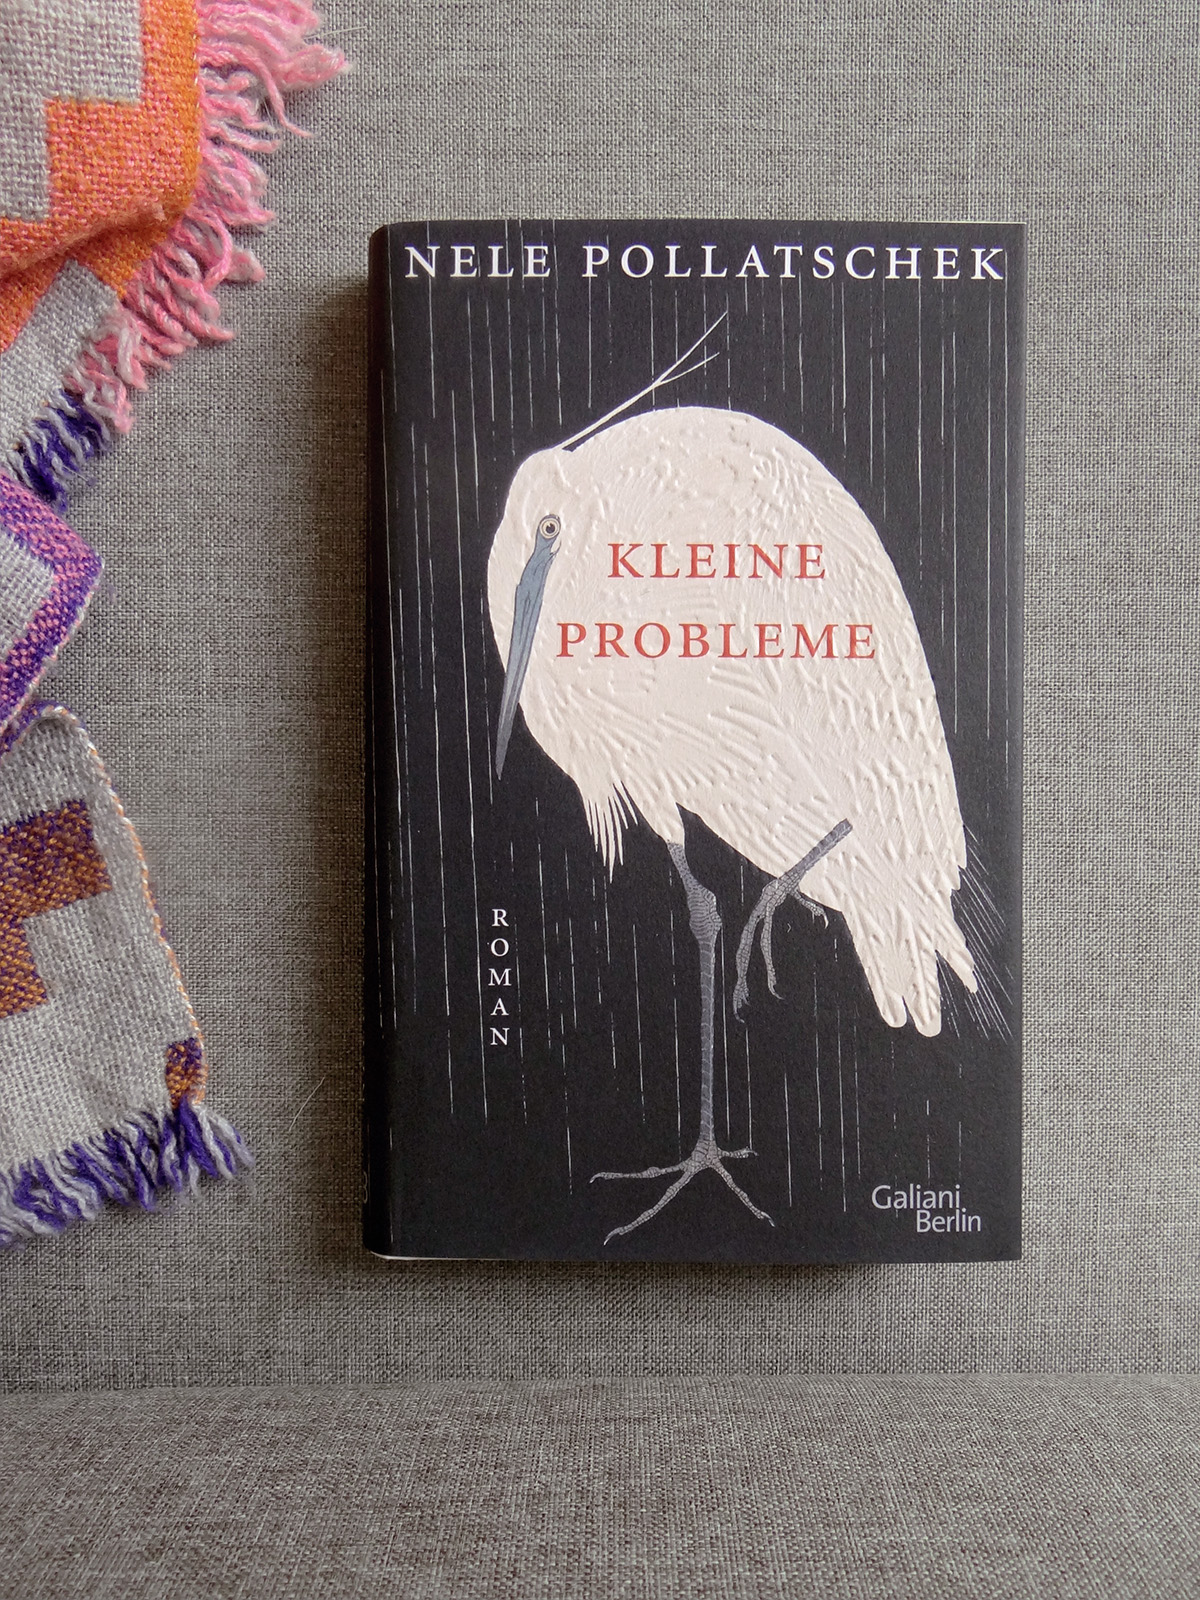 Das Buch Kleine Probleme von Nele Pollatschek